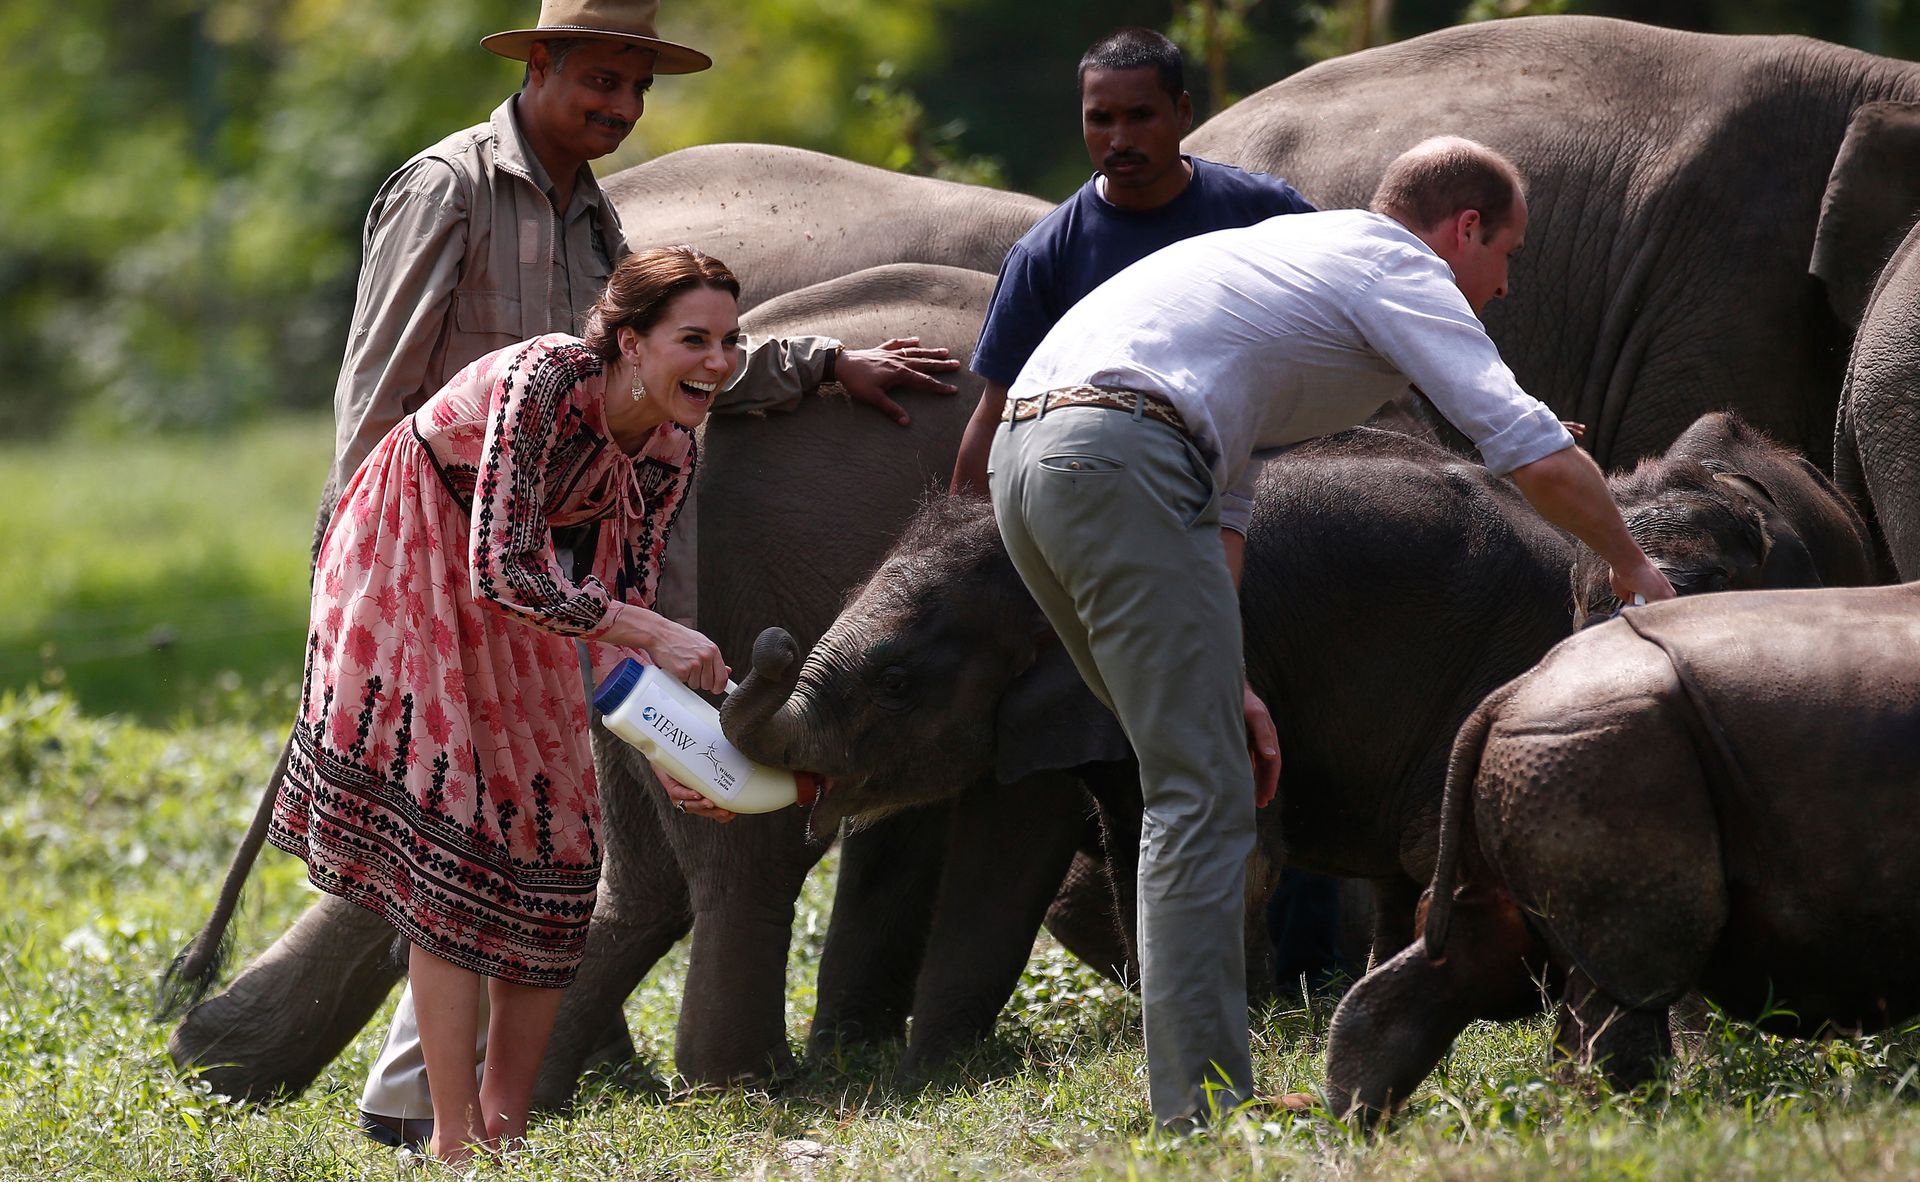 Tijdens een bezoek aan India voeden Catherine en William de kleine olifantjes bij. Zij bezochten dit